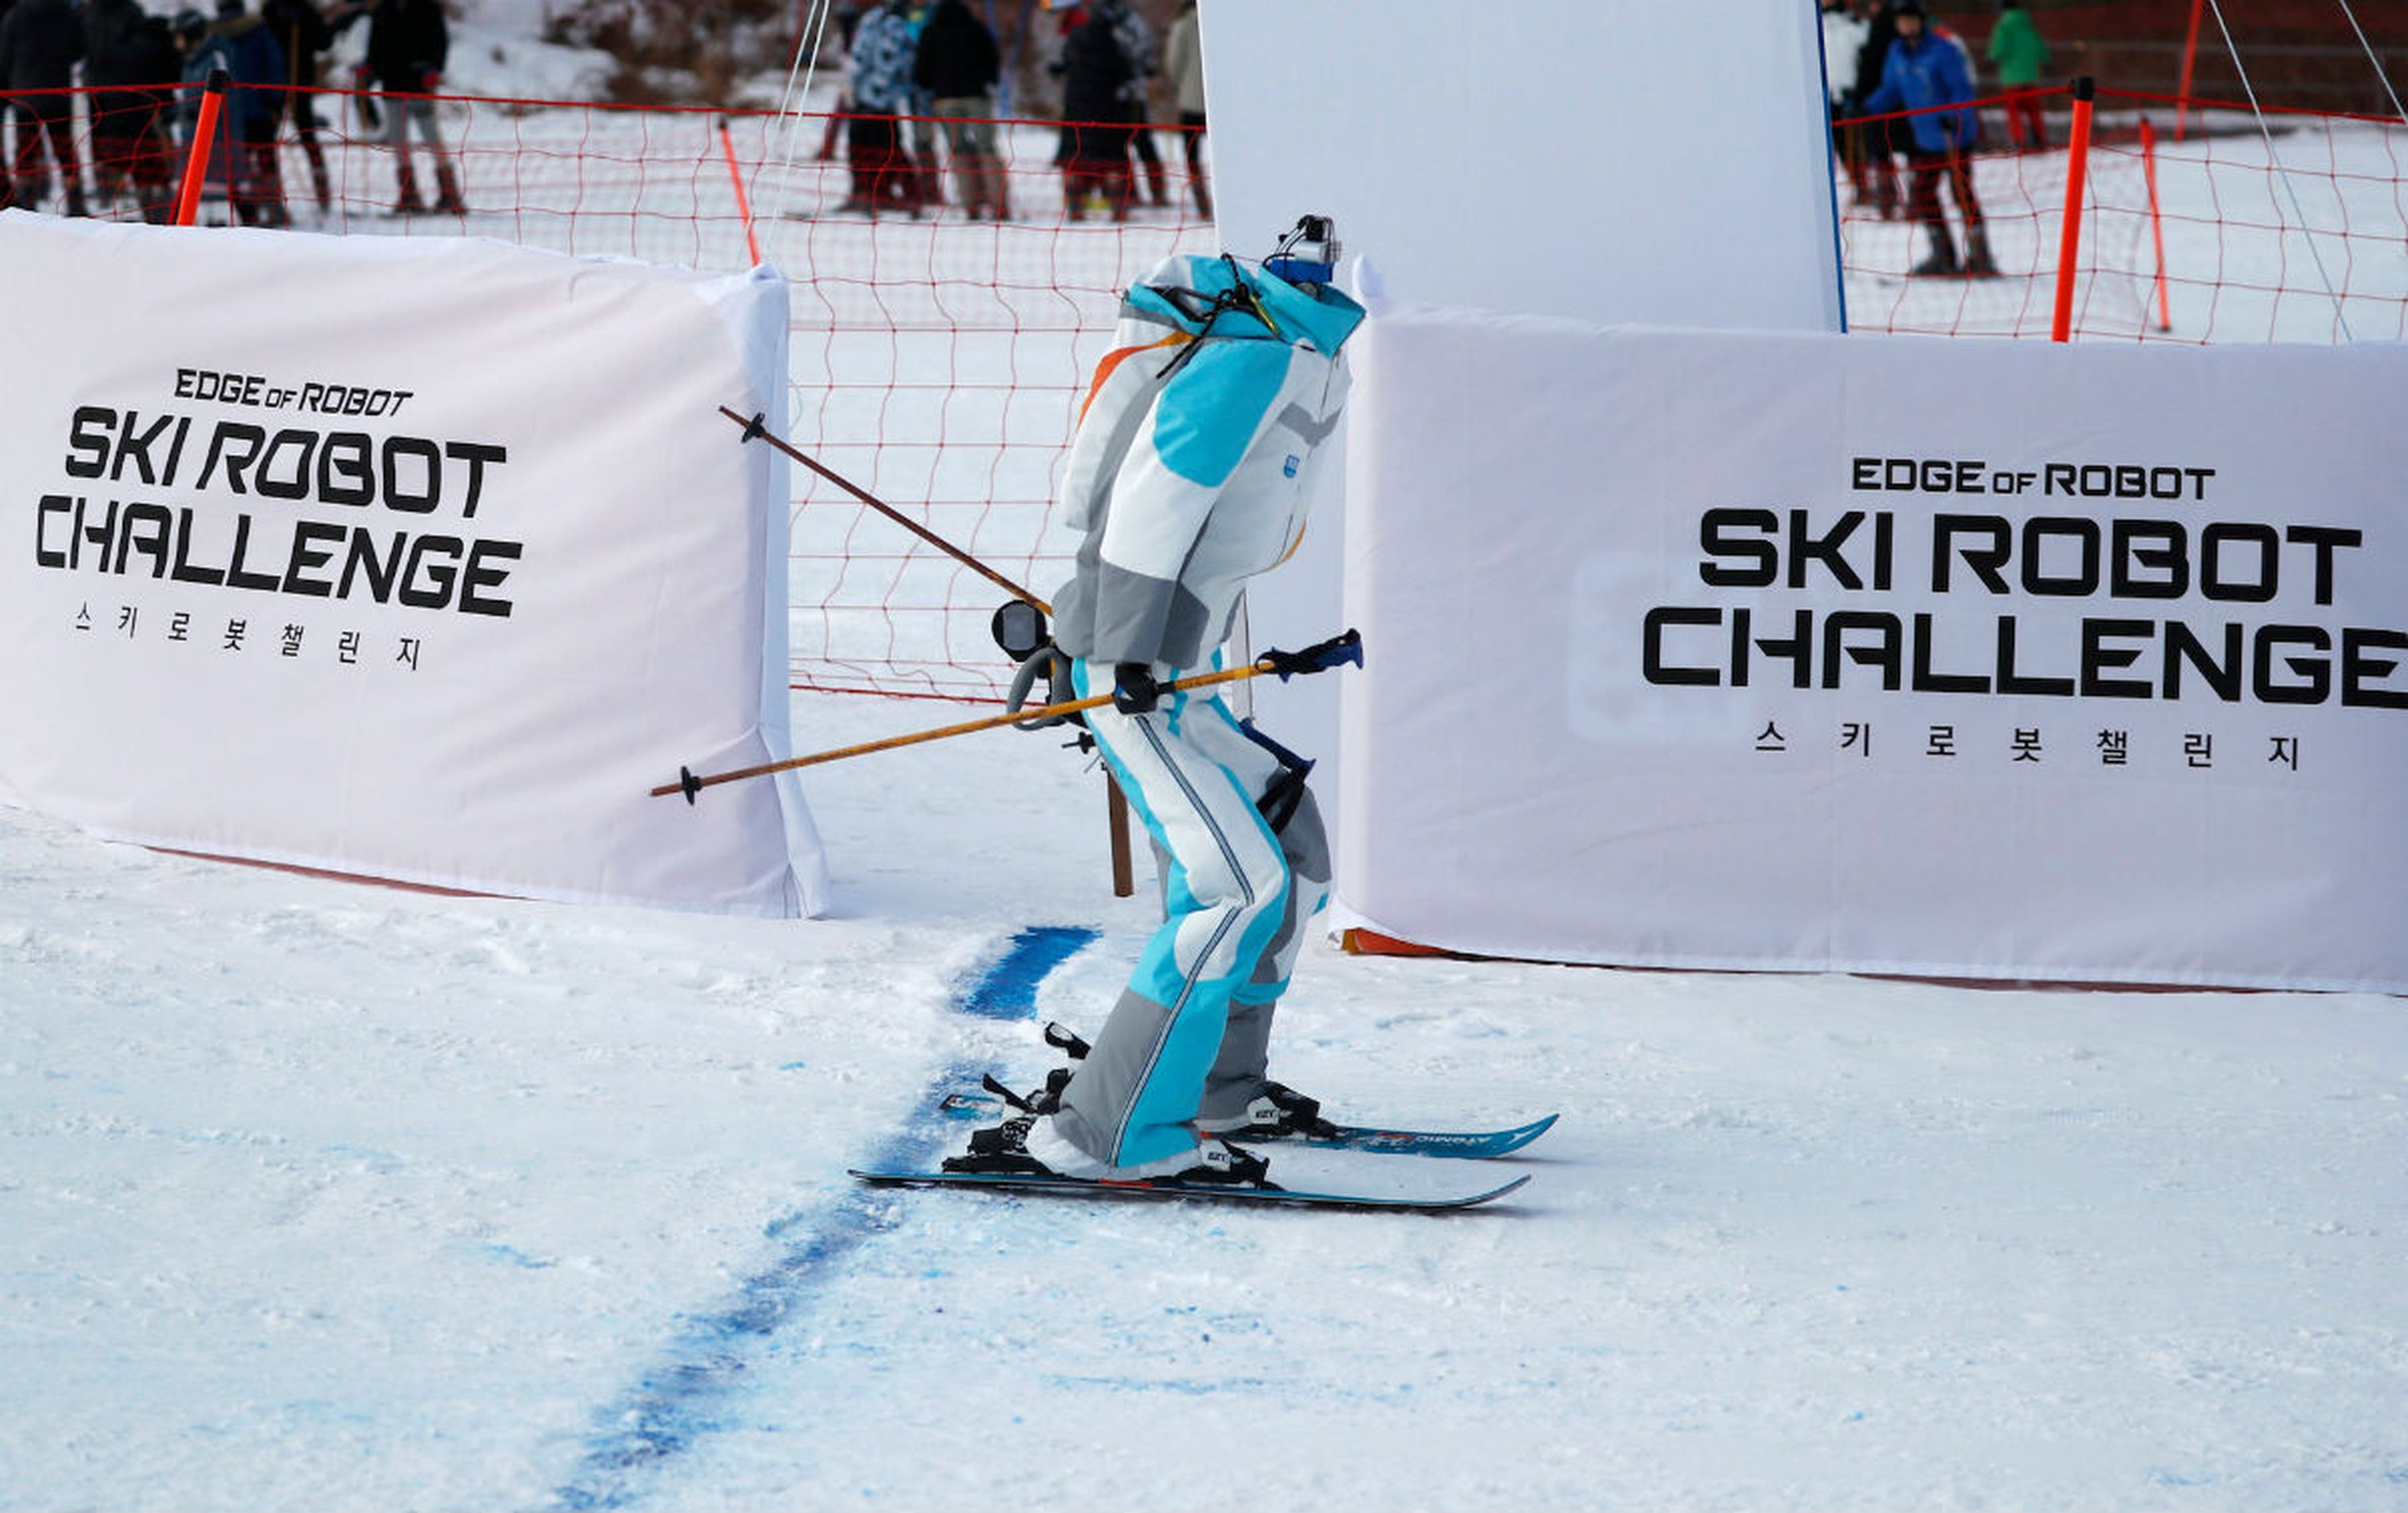 Ski Robot Challenge en los Juegos Olímpicos de Pyeongchang 2018